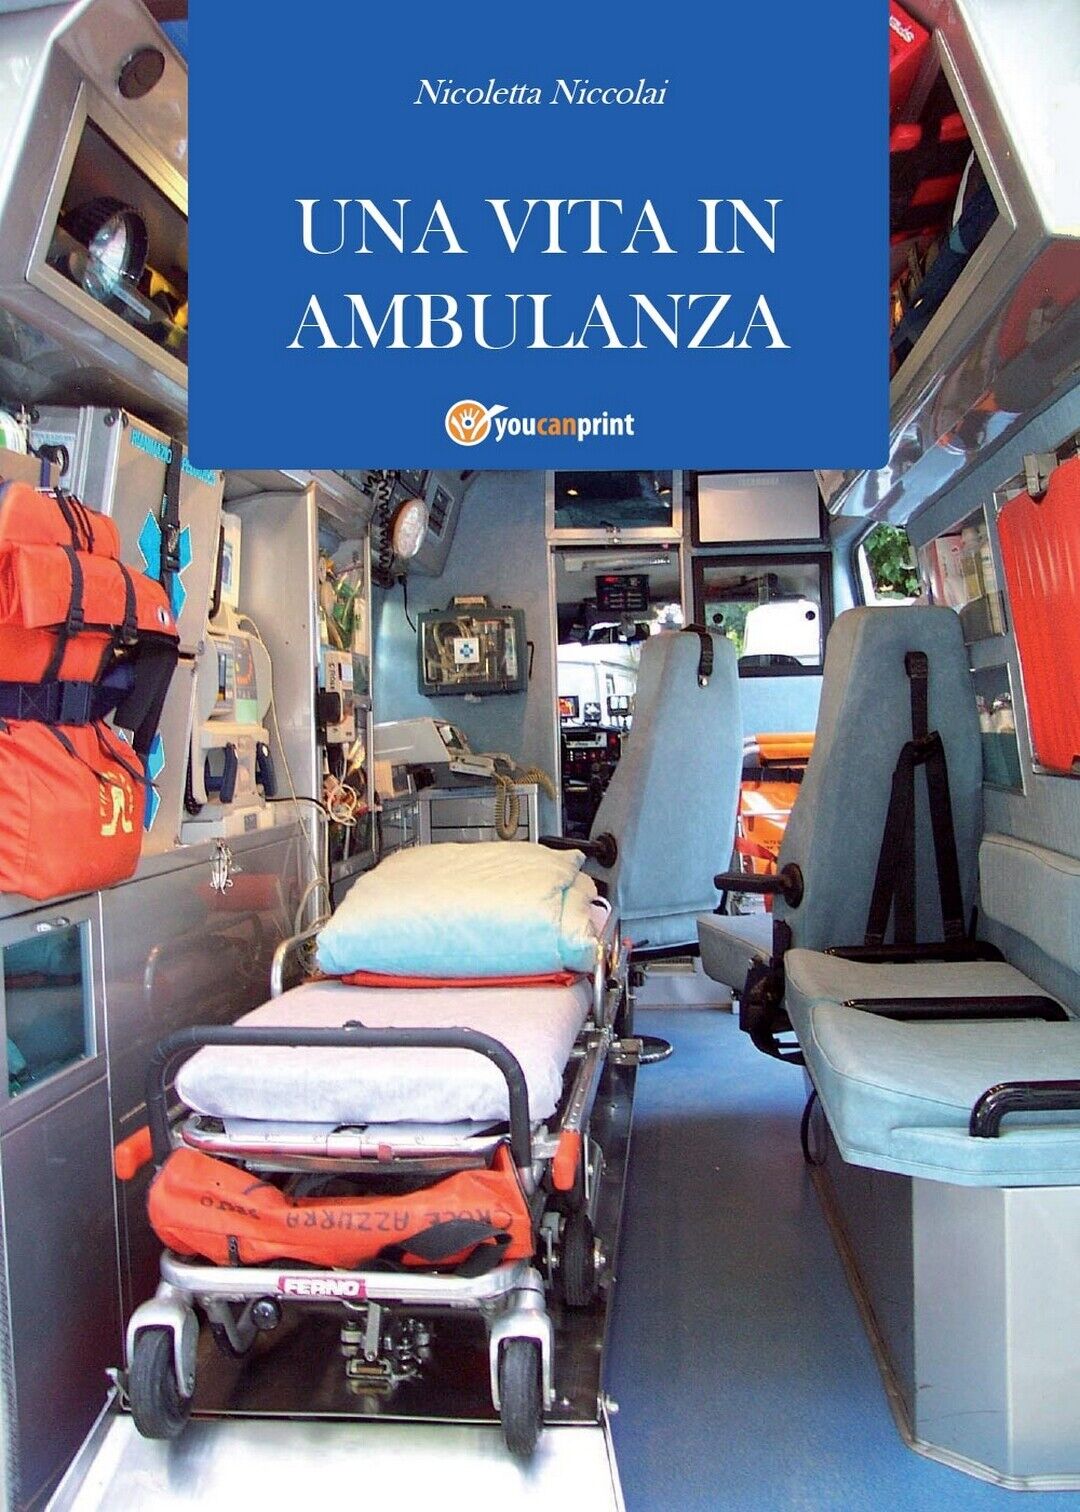 Una vita in ambulanza  di Nicoletta Niccolai,  2011,  Youcanprint